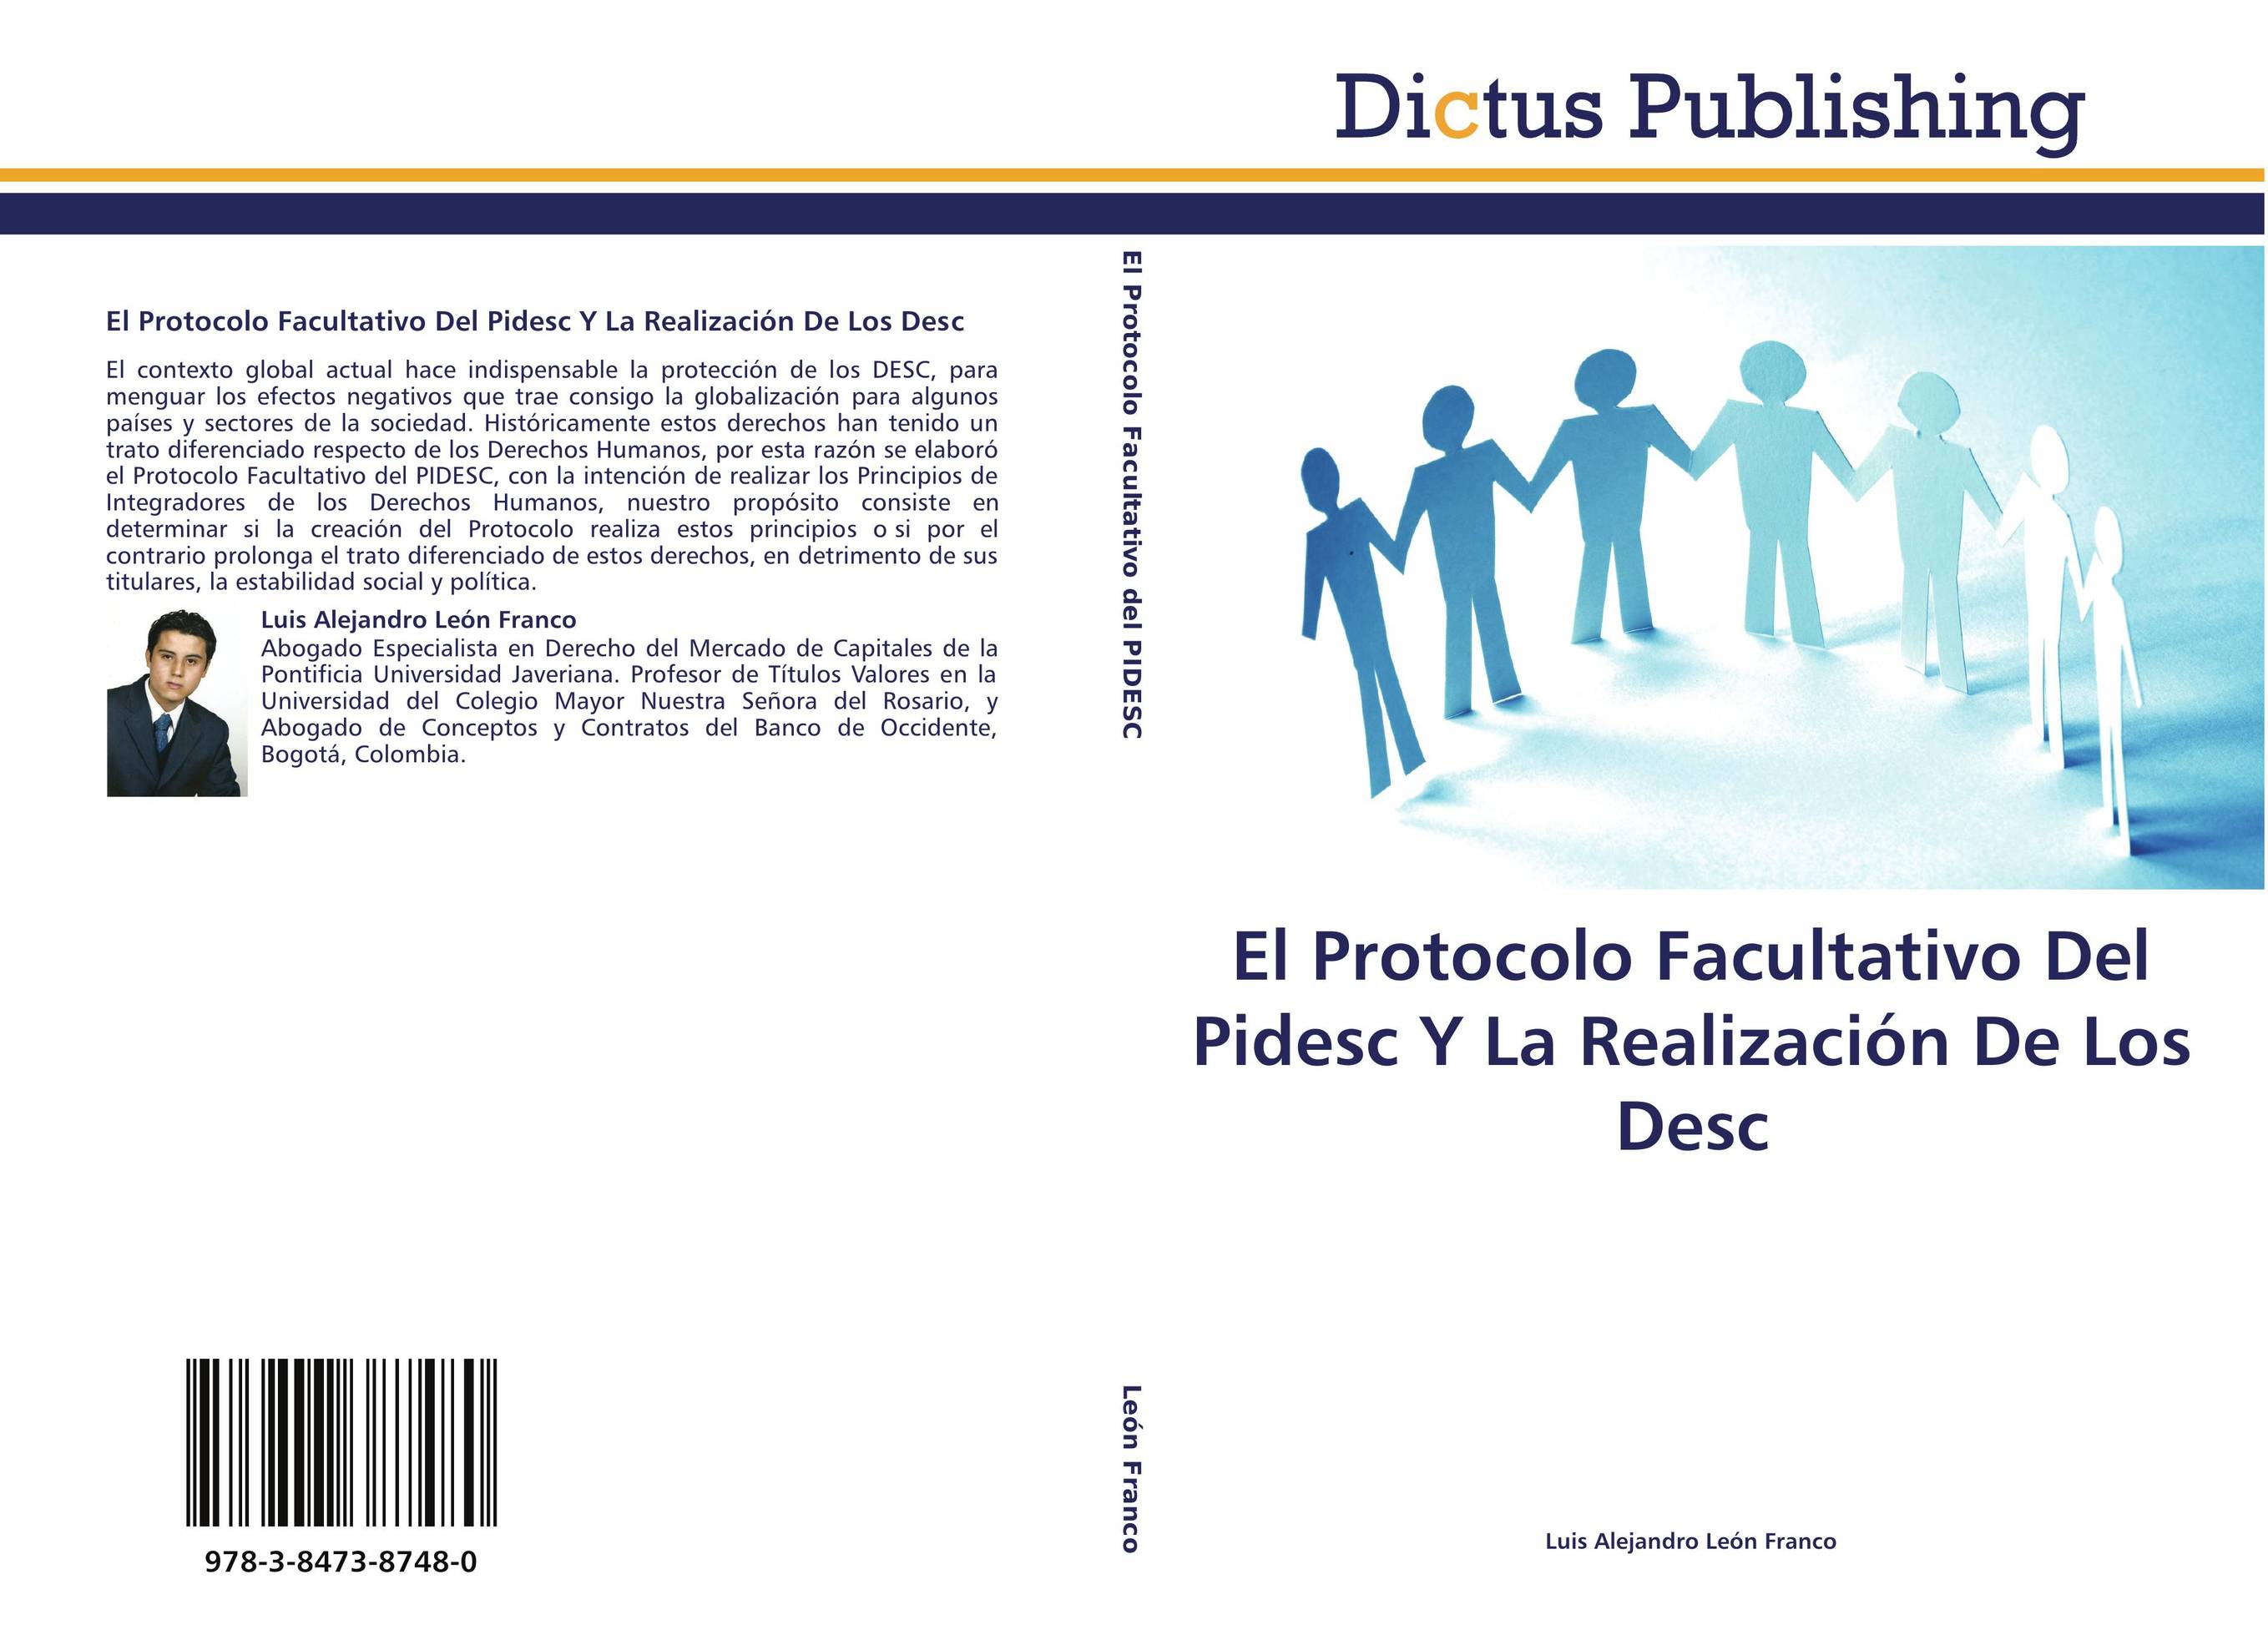 El Protocolo Facultativo Del Pidesc Y La Realización De Los Desc